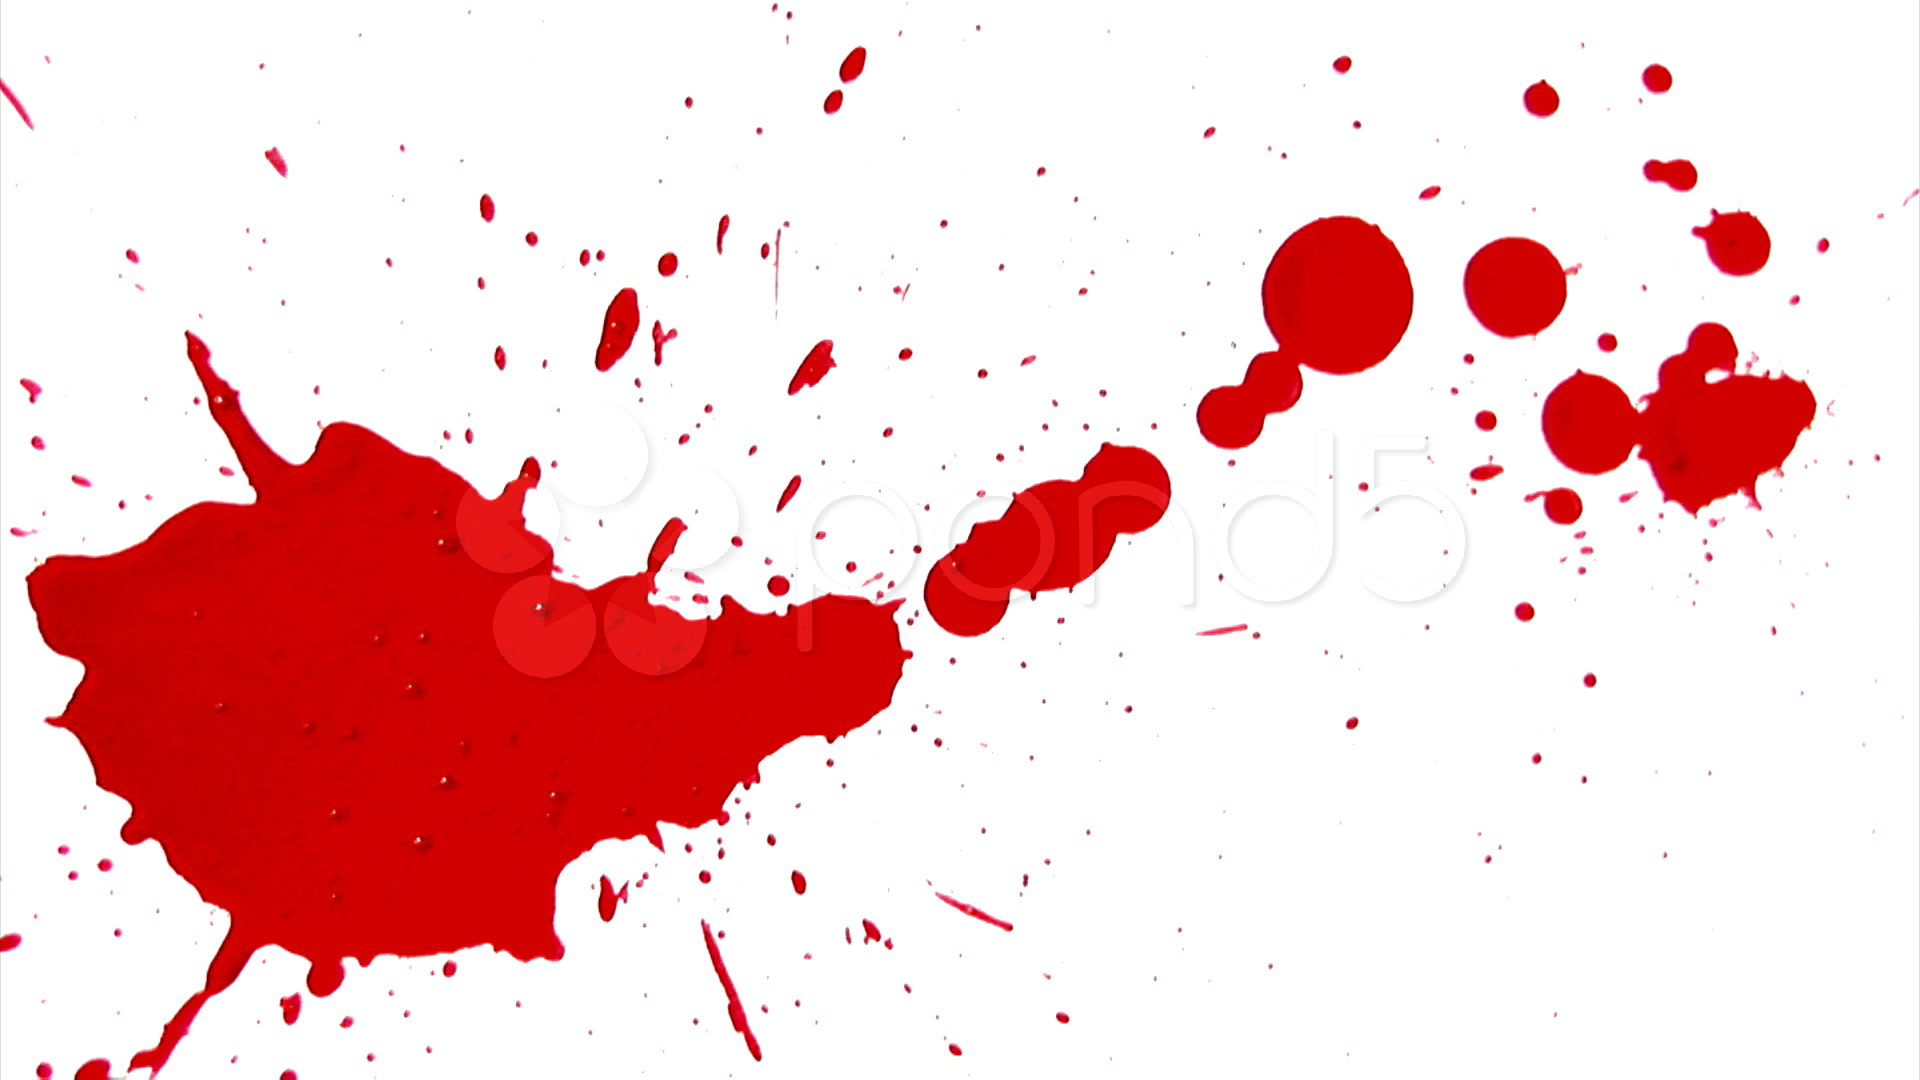 ... Blood Splatter - A blood 